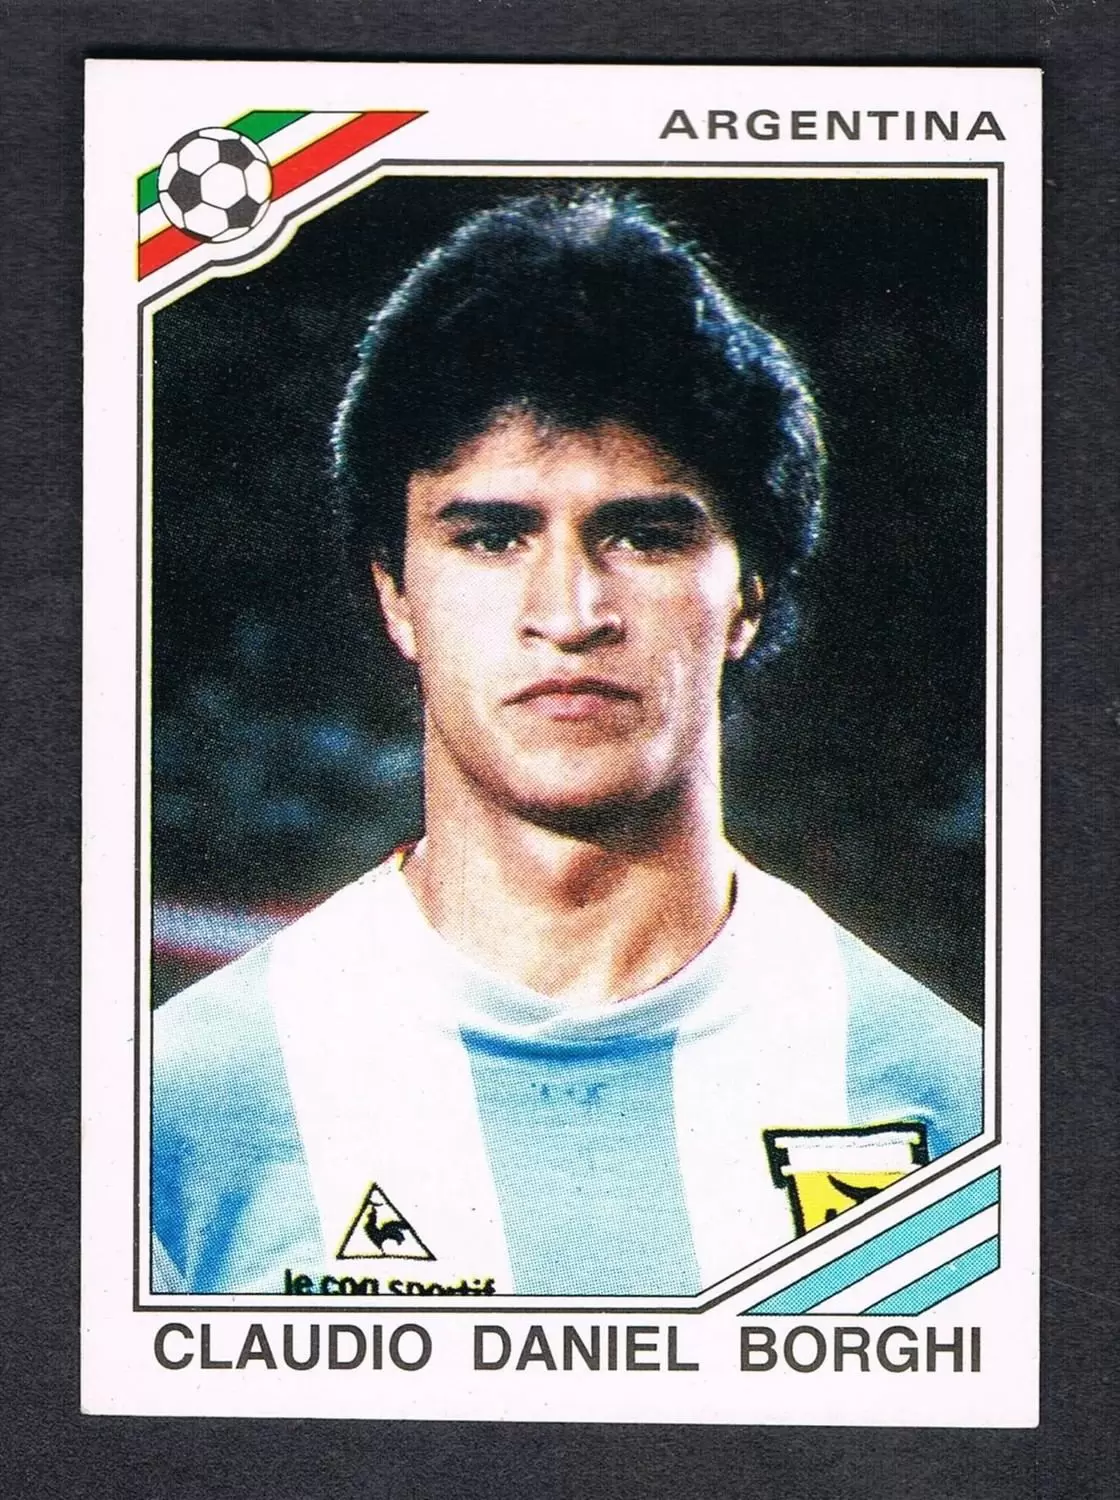 Mexico 86 World Cup - Claudio Daniel Borghi - Argentine